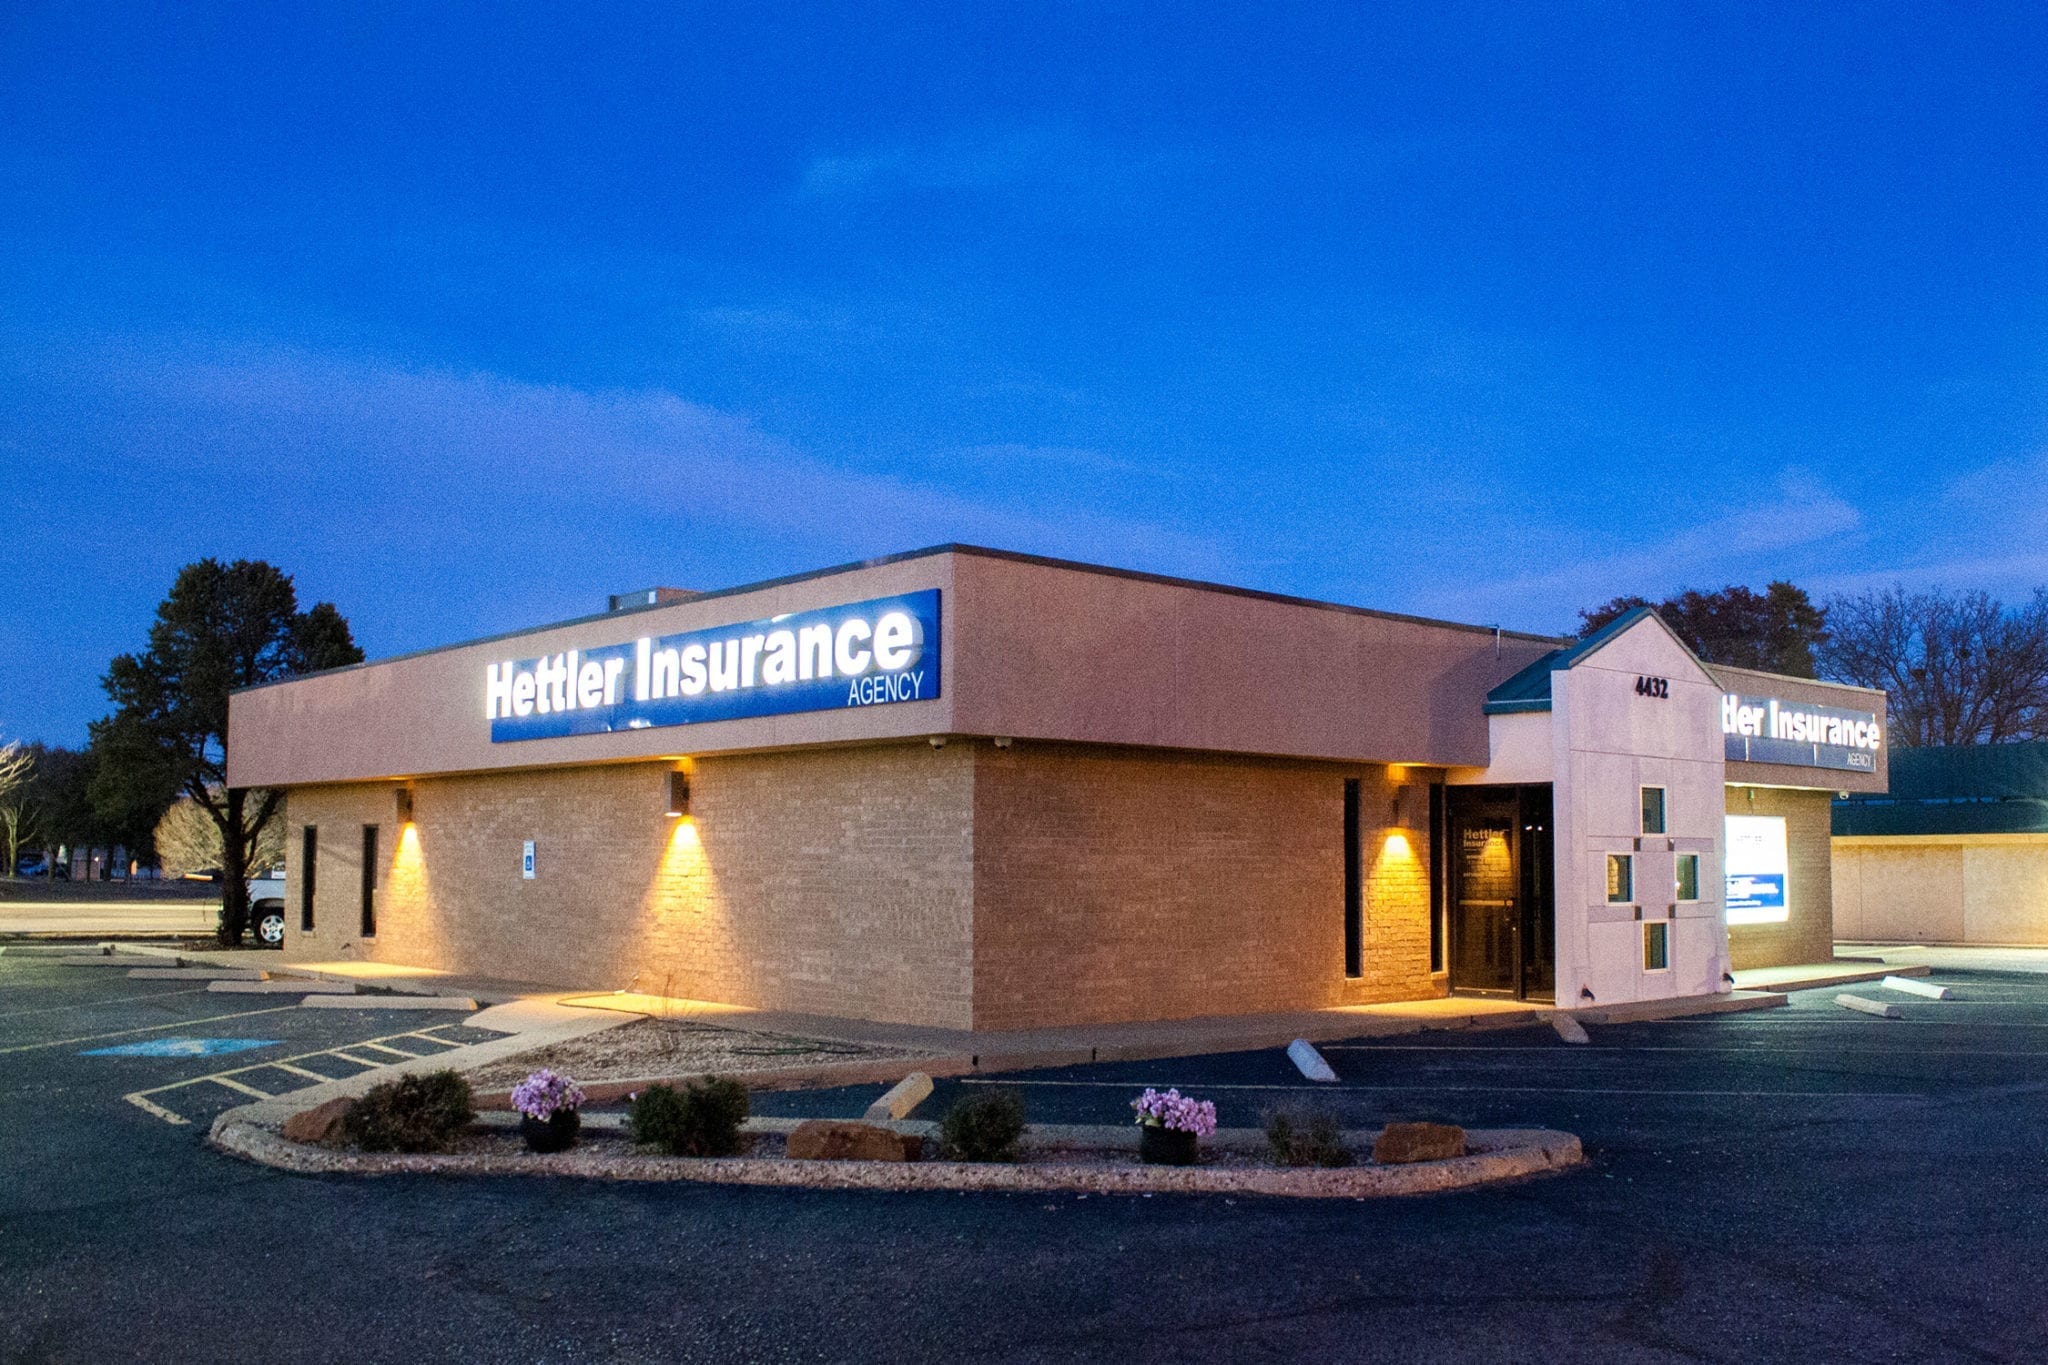 Hettler Insurance Agency Building Eveningshot, Lubbock Texas